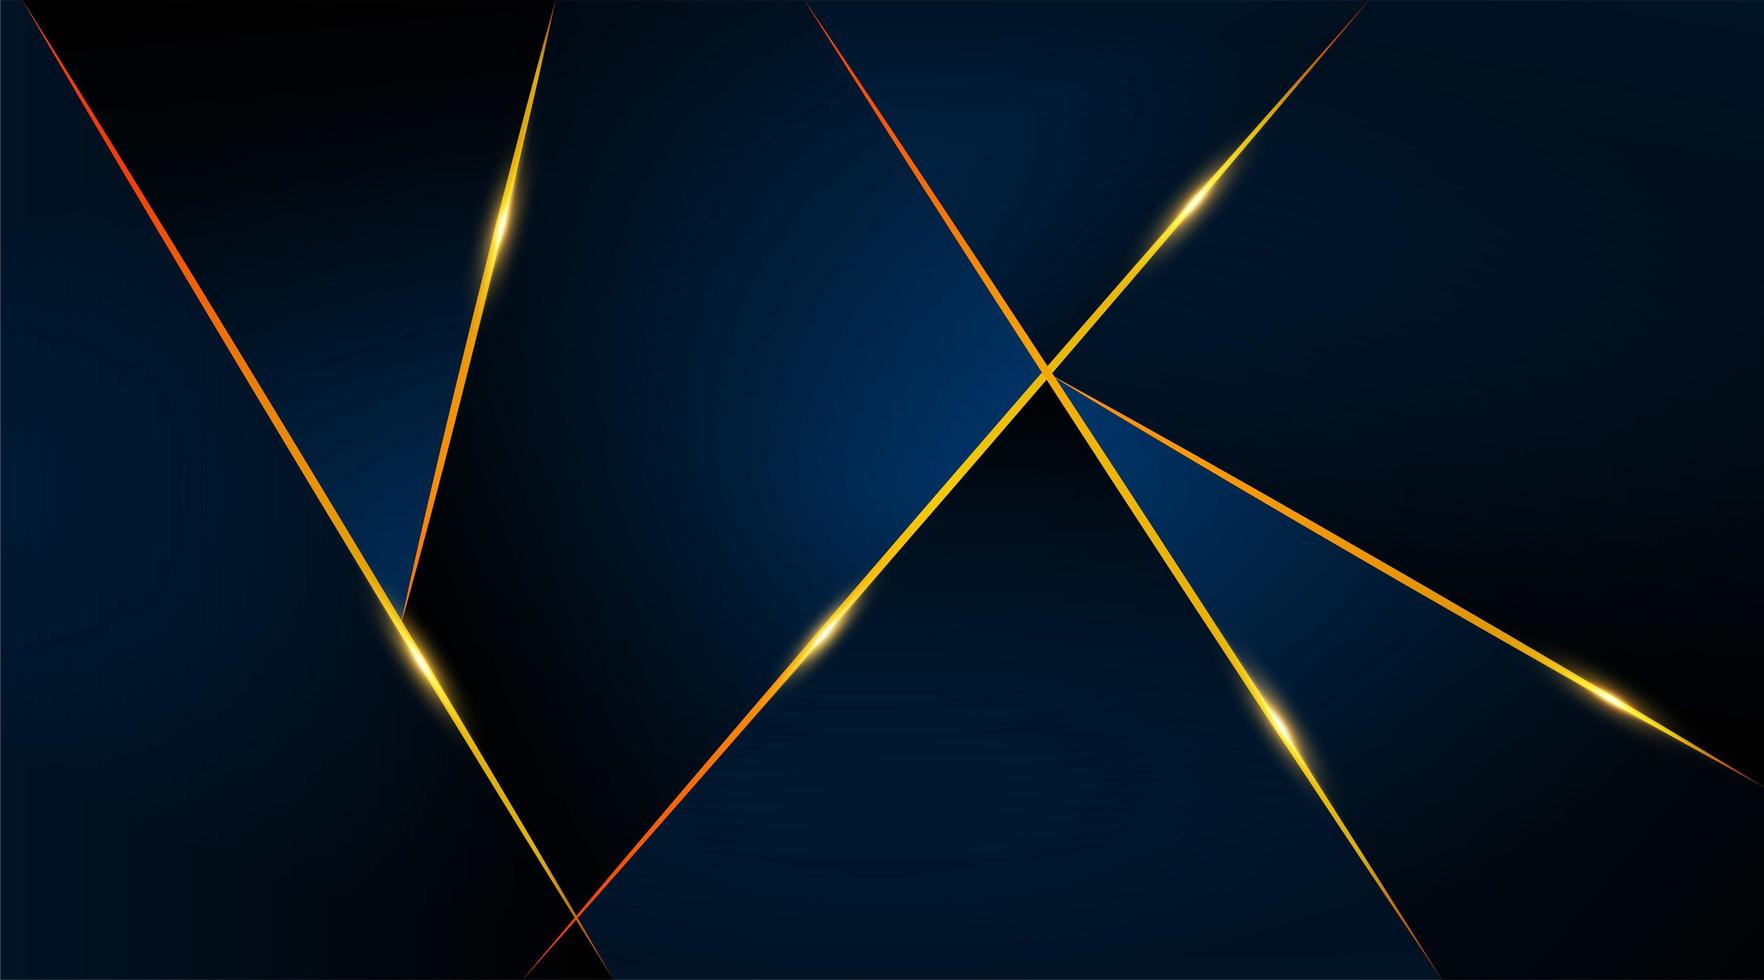 Plantilla de tarjeta de lujo geométrica moderna para negocios o presentación con líneas doradas sobre un fondo azul oscuro vector